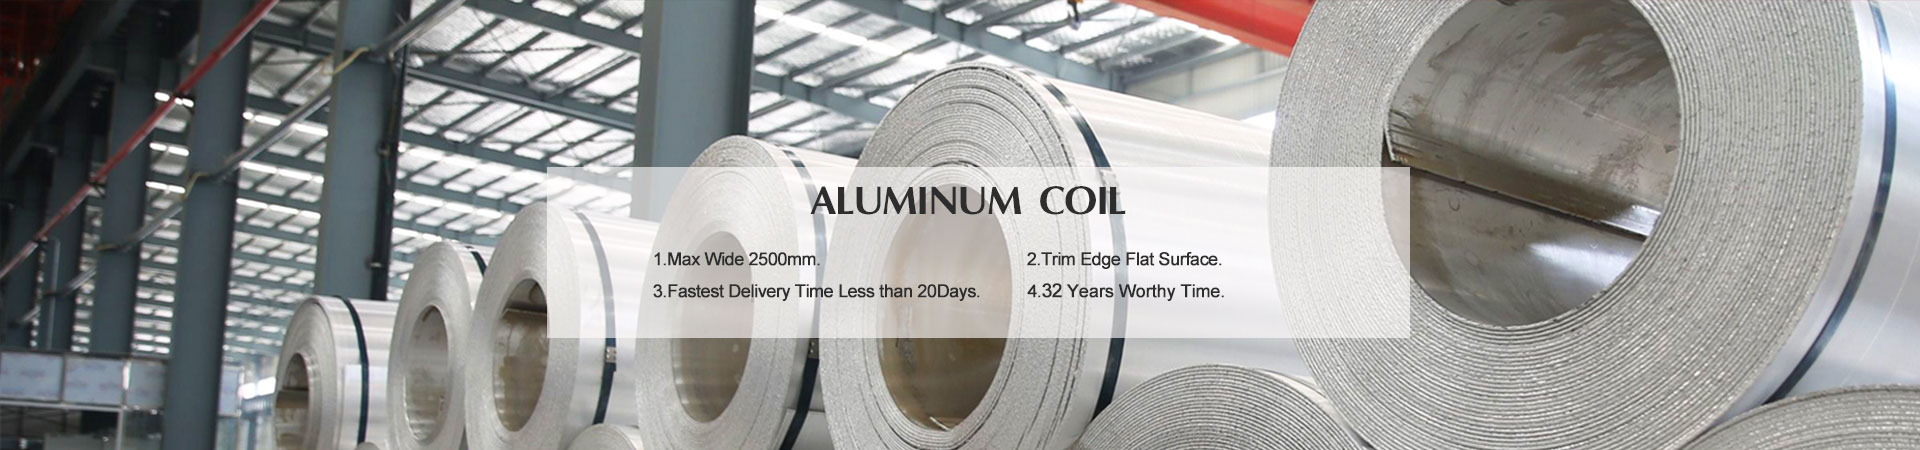 Aluminum Coil 